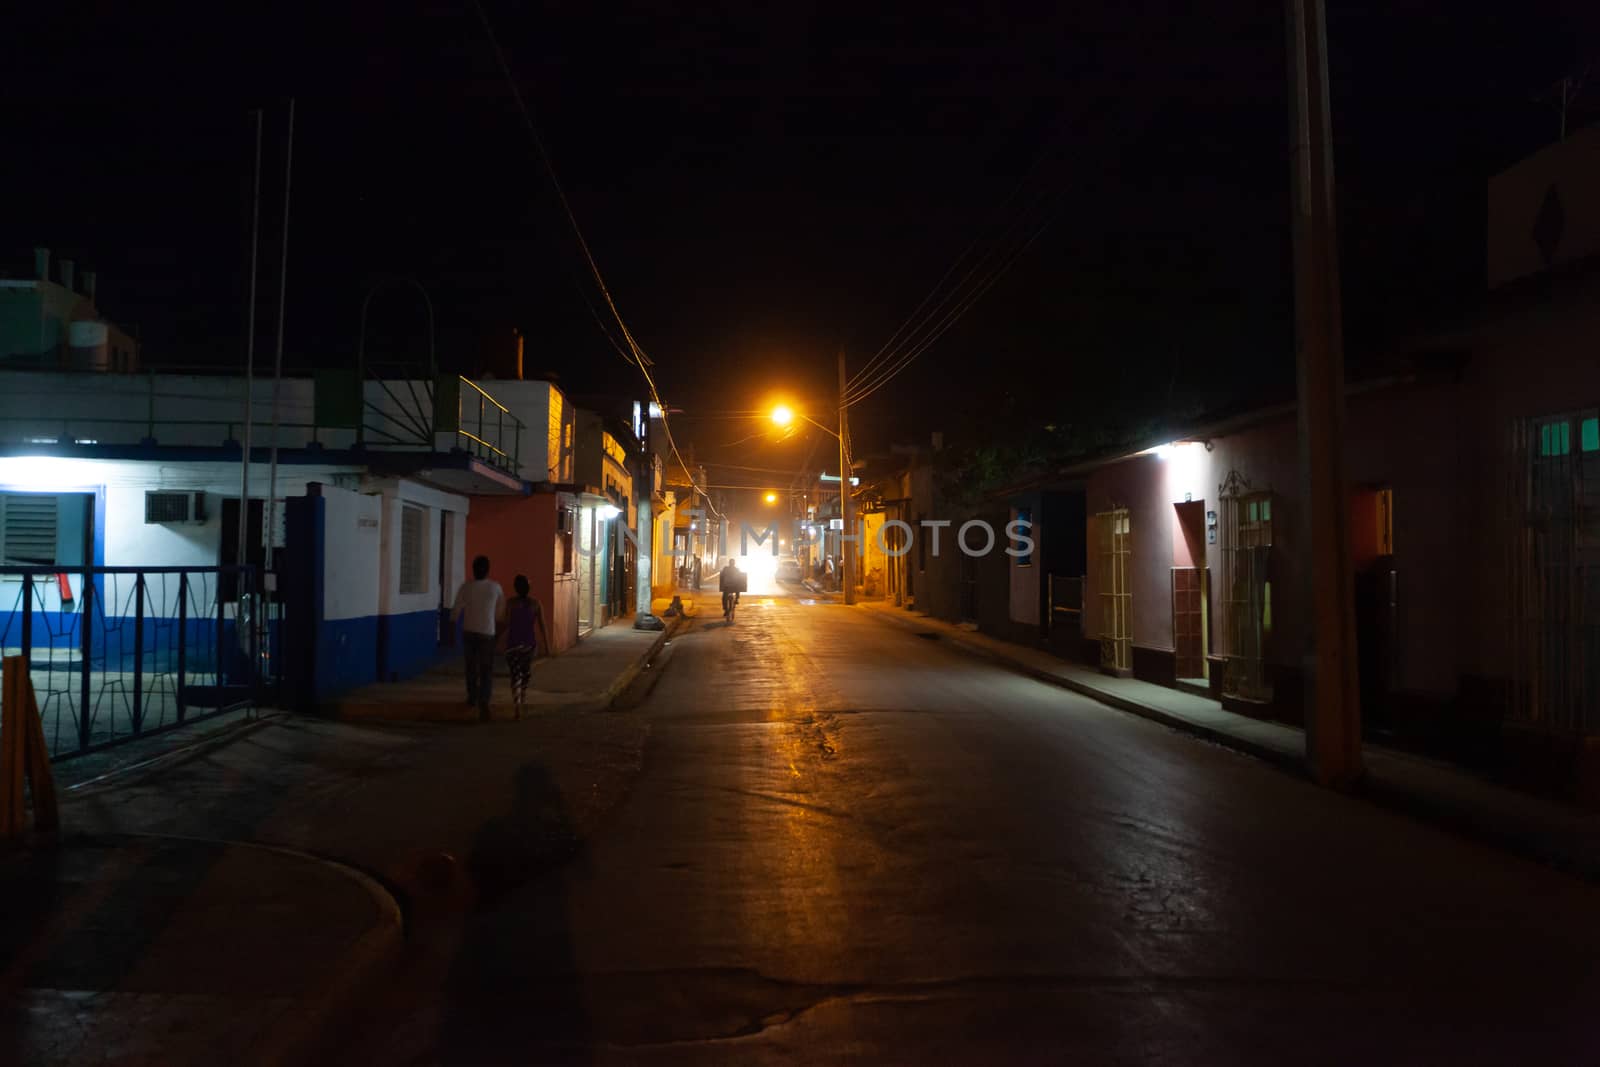 Night street at Trinidad, Cuba by vlad-m